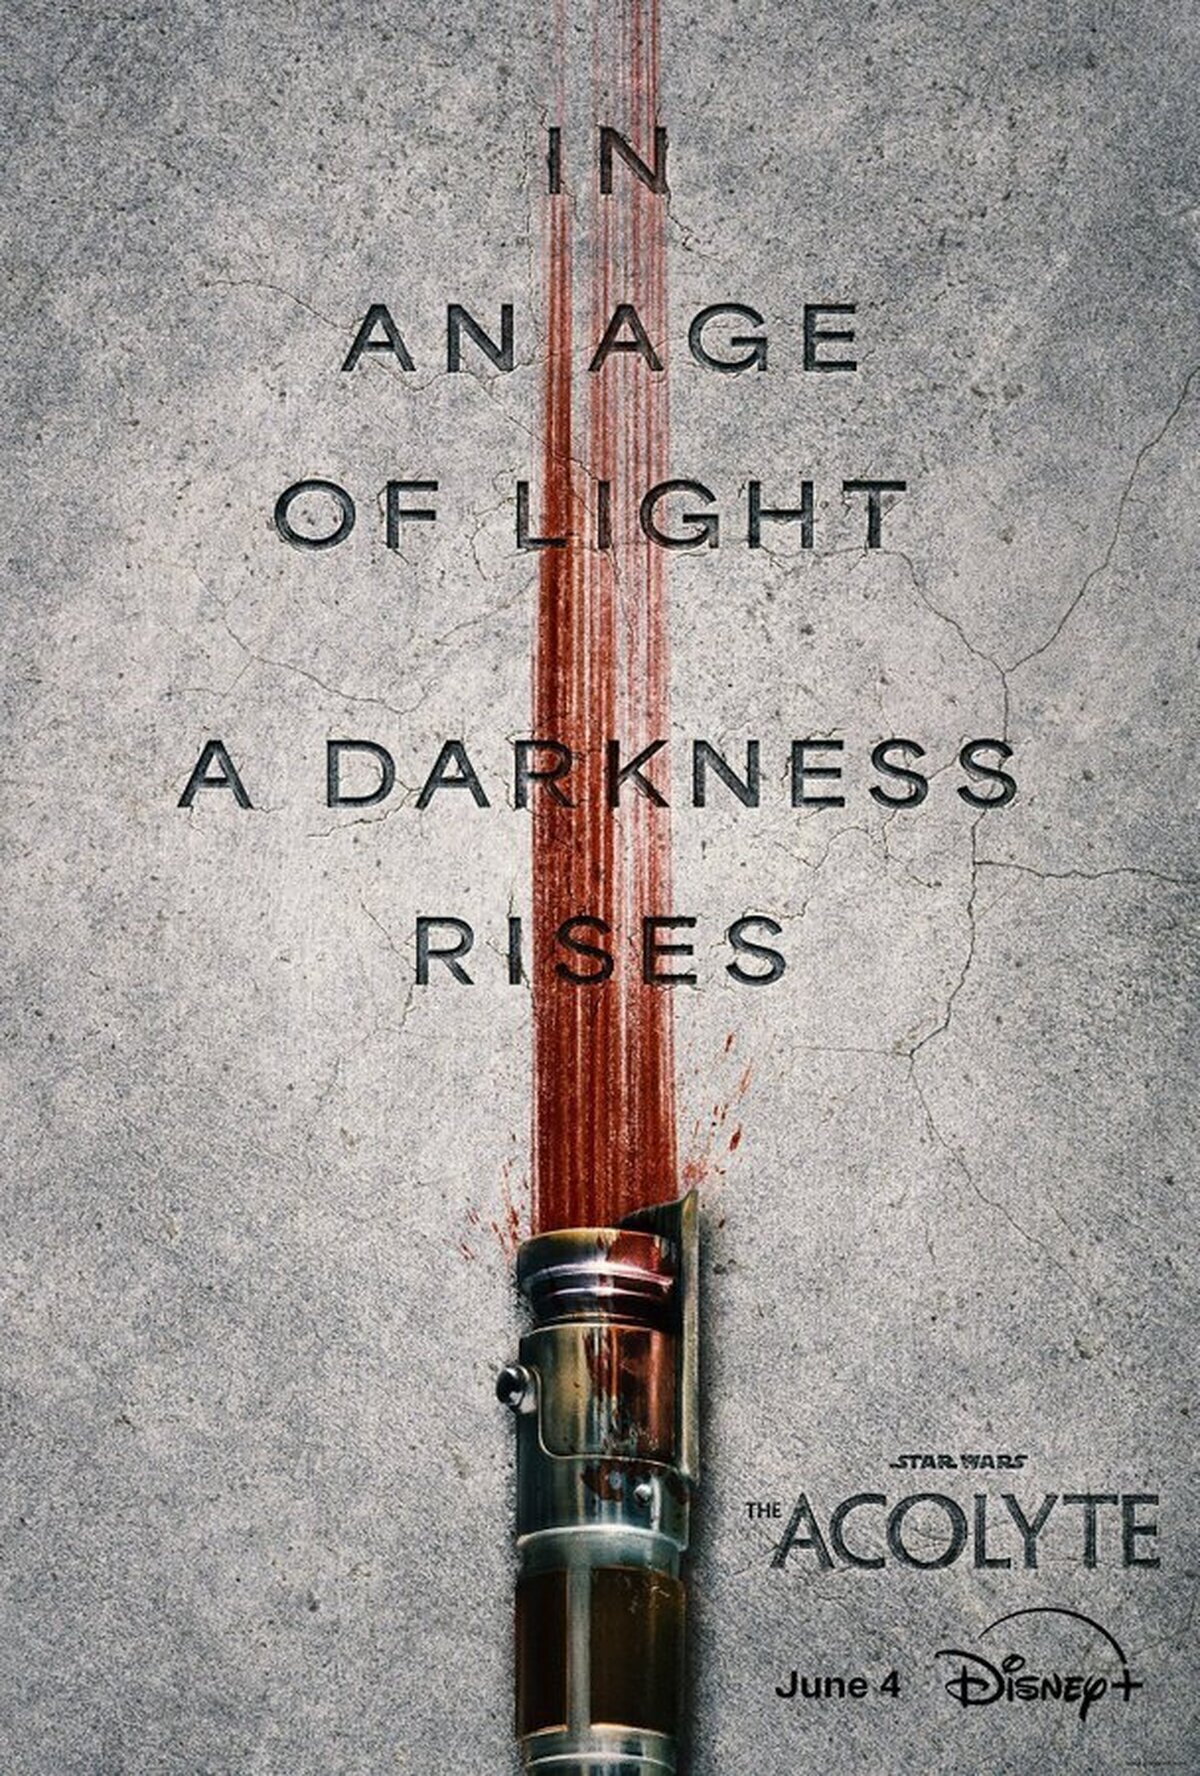 Primer póster oficial de 'The Acolyte' la serie de Star Wars, que será la primera precuela oficial aproximadamente 100 años antes del Episodio I: La Amenaza Fantasma.